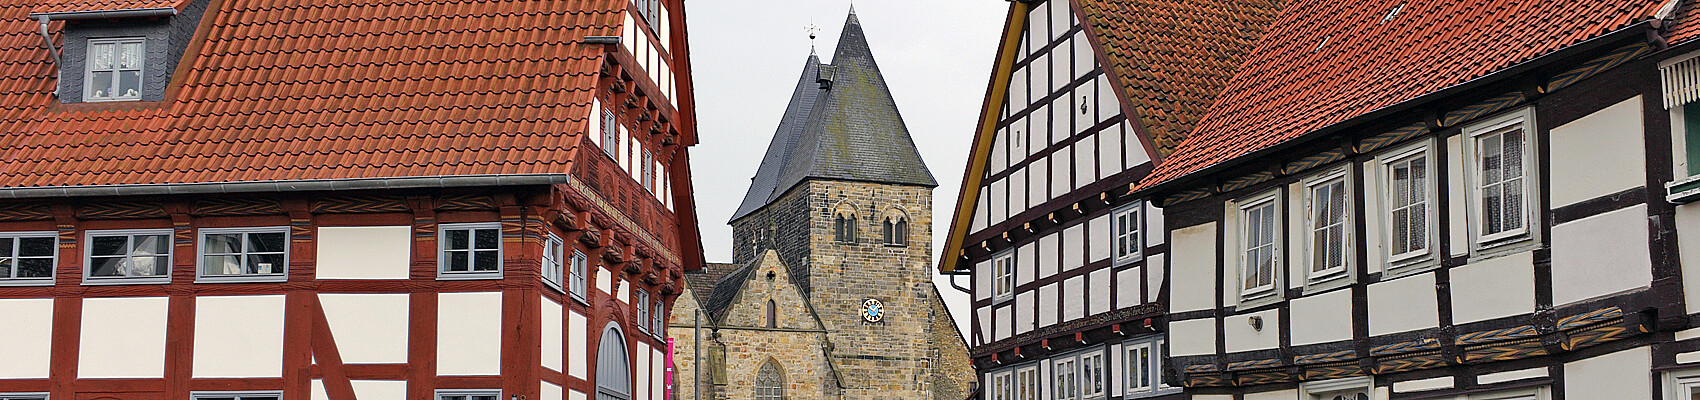 Turm zwischen Fachwerk: Blick auf die Stiftskirche in Obernkirchen. Foto: Click im Kloster Obernkirchen